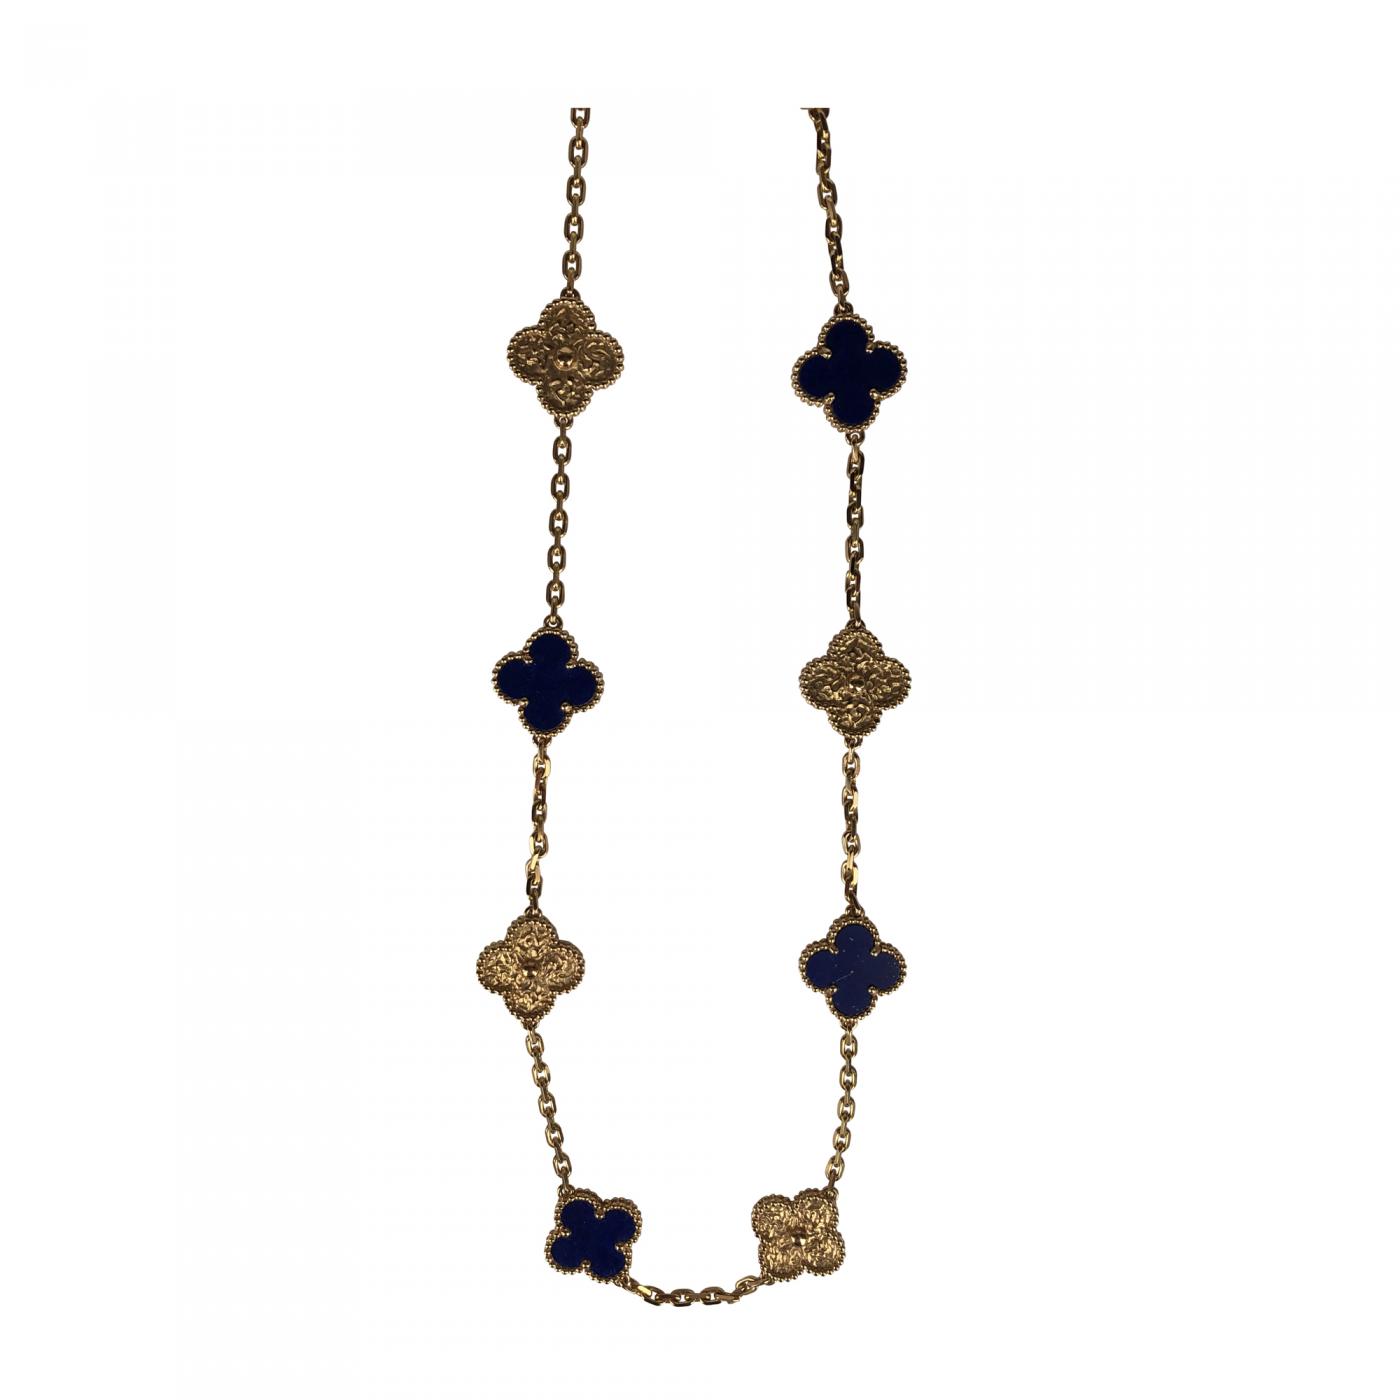 Alsjeblieft kijk houd er rekening mee dat vragenlijst Van Cleef & Arpels limited edition Alhambra necklace